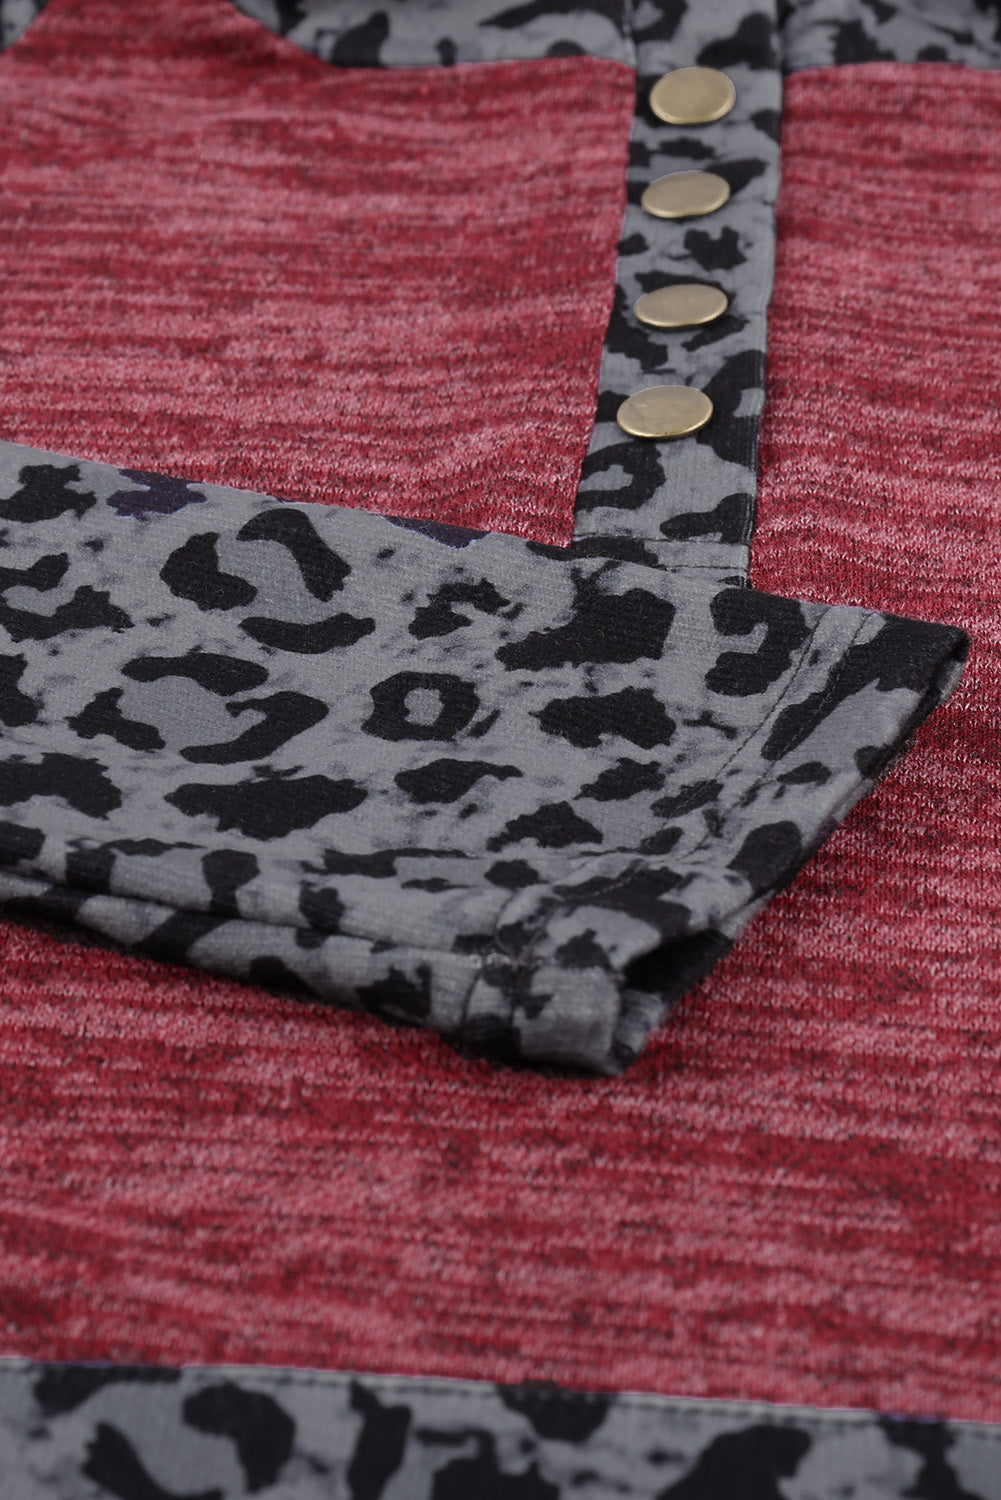 Color Block Leopard Long Sleeves Wine Hoodie Sweatshirts & Hoodies JT's Designer Fashion